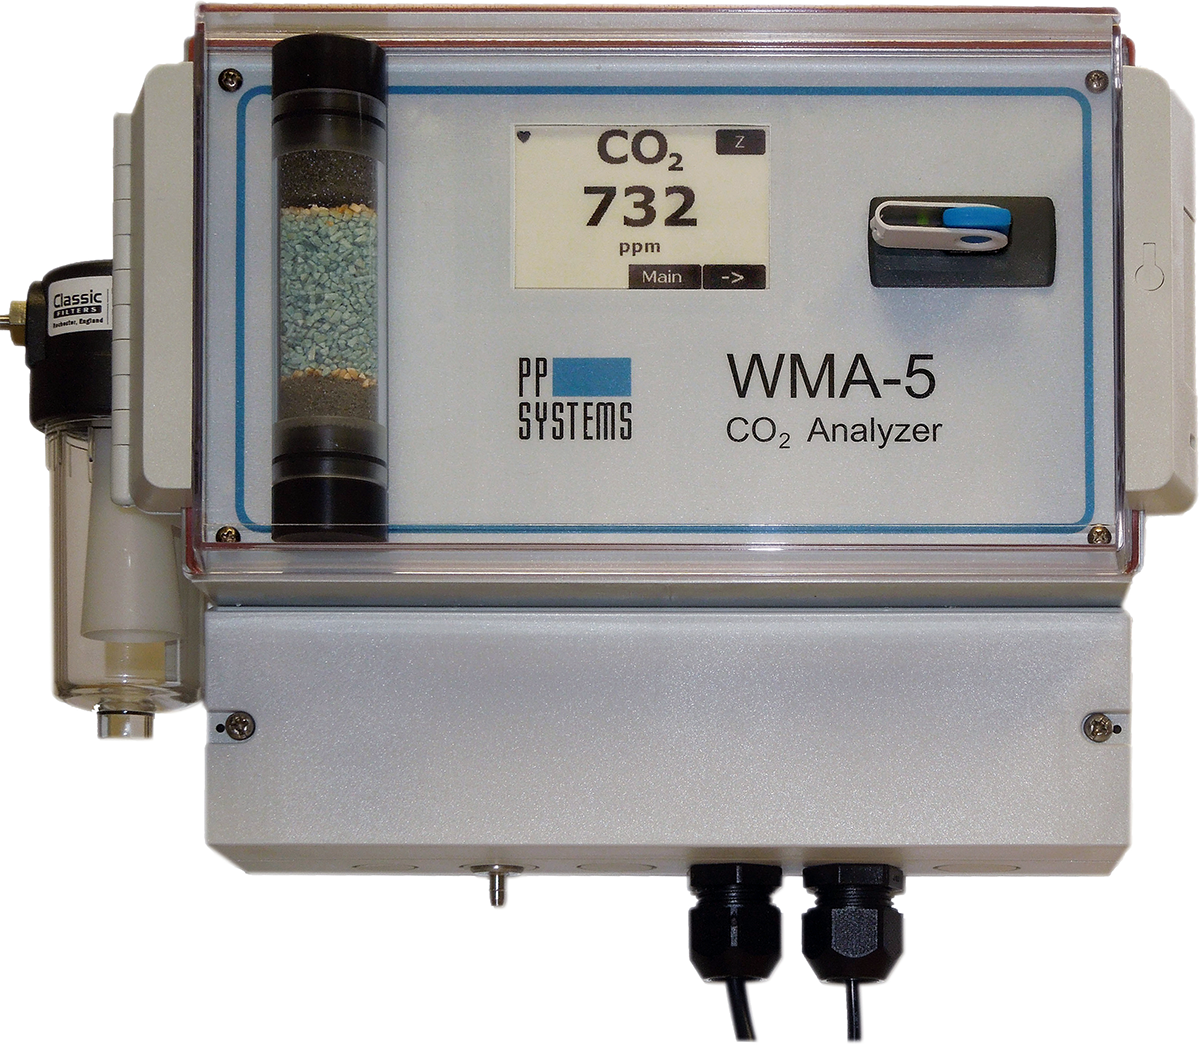 CO2 gas analyzer